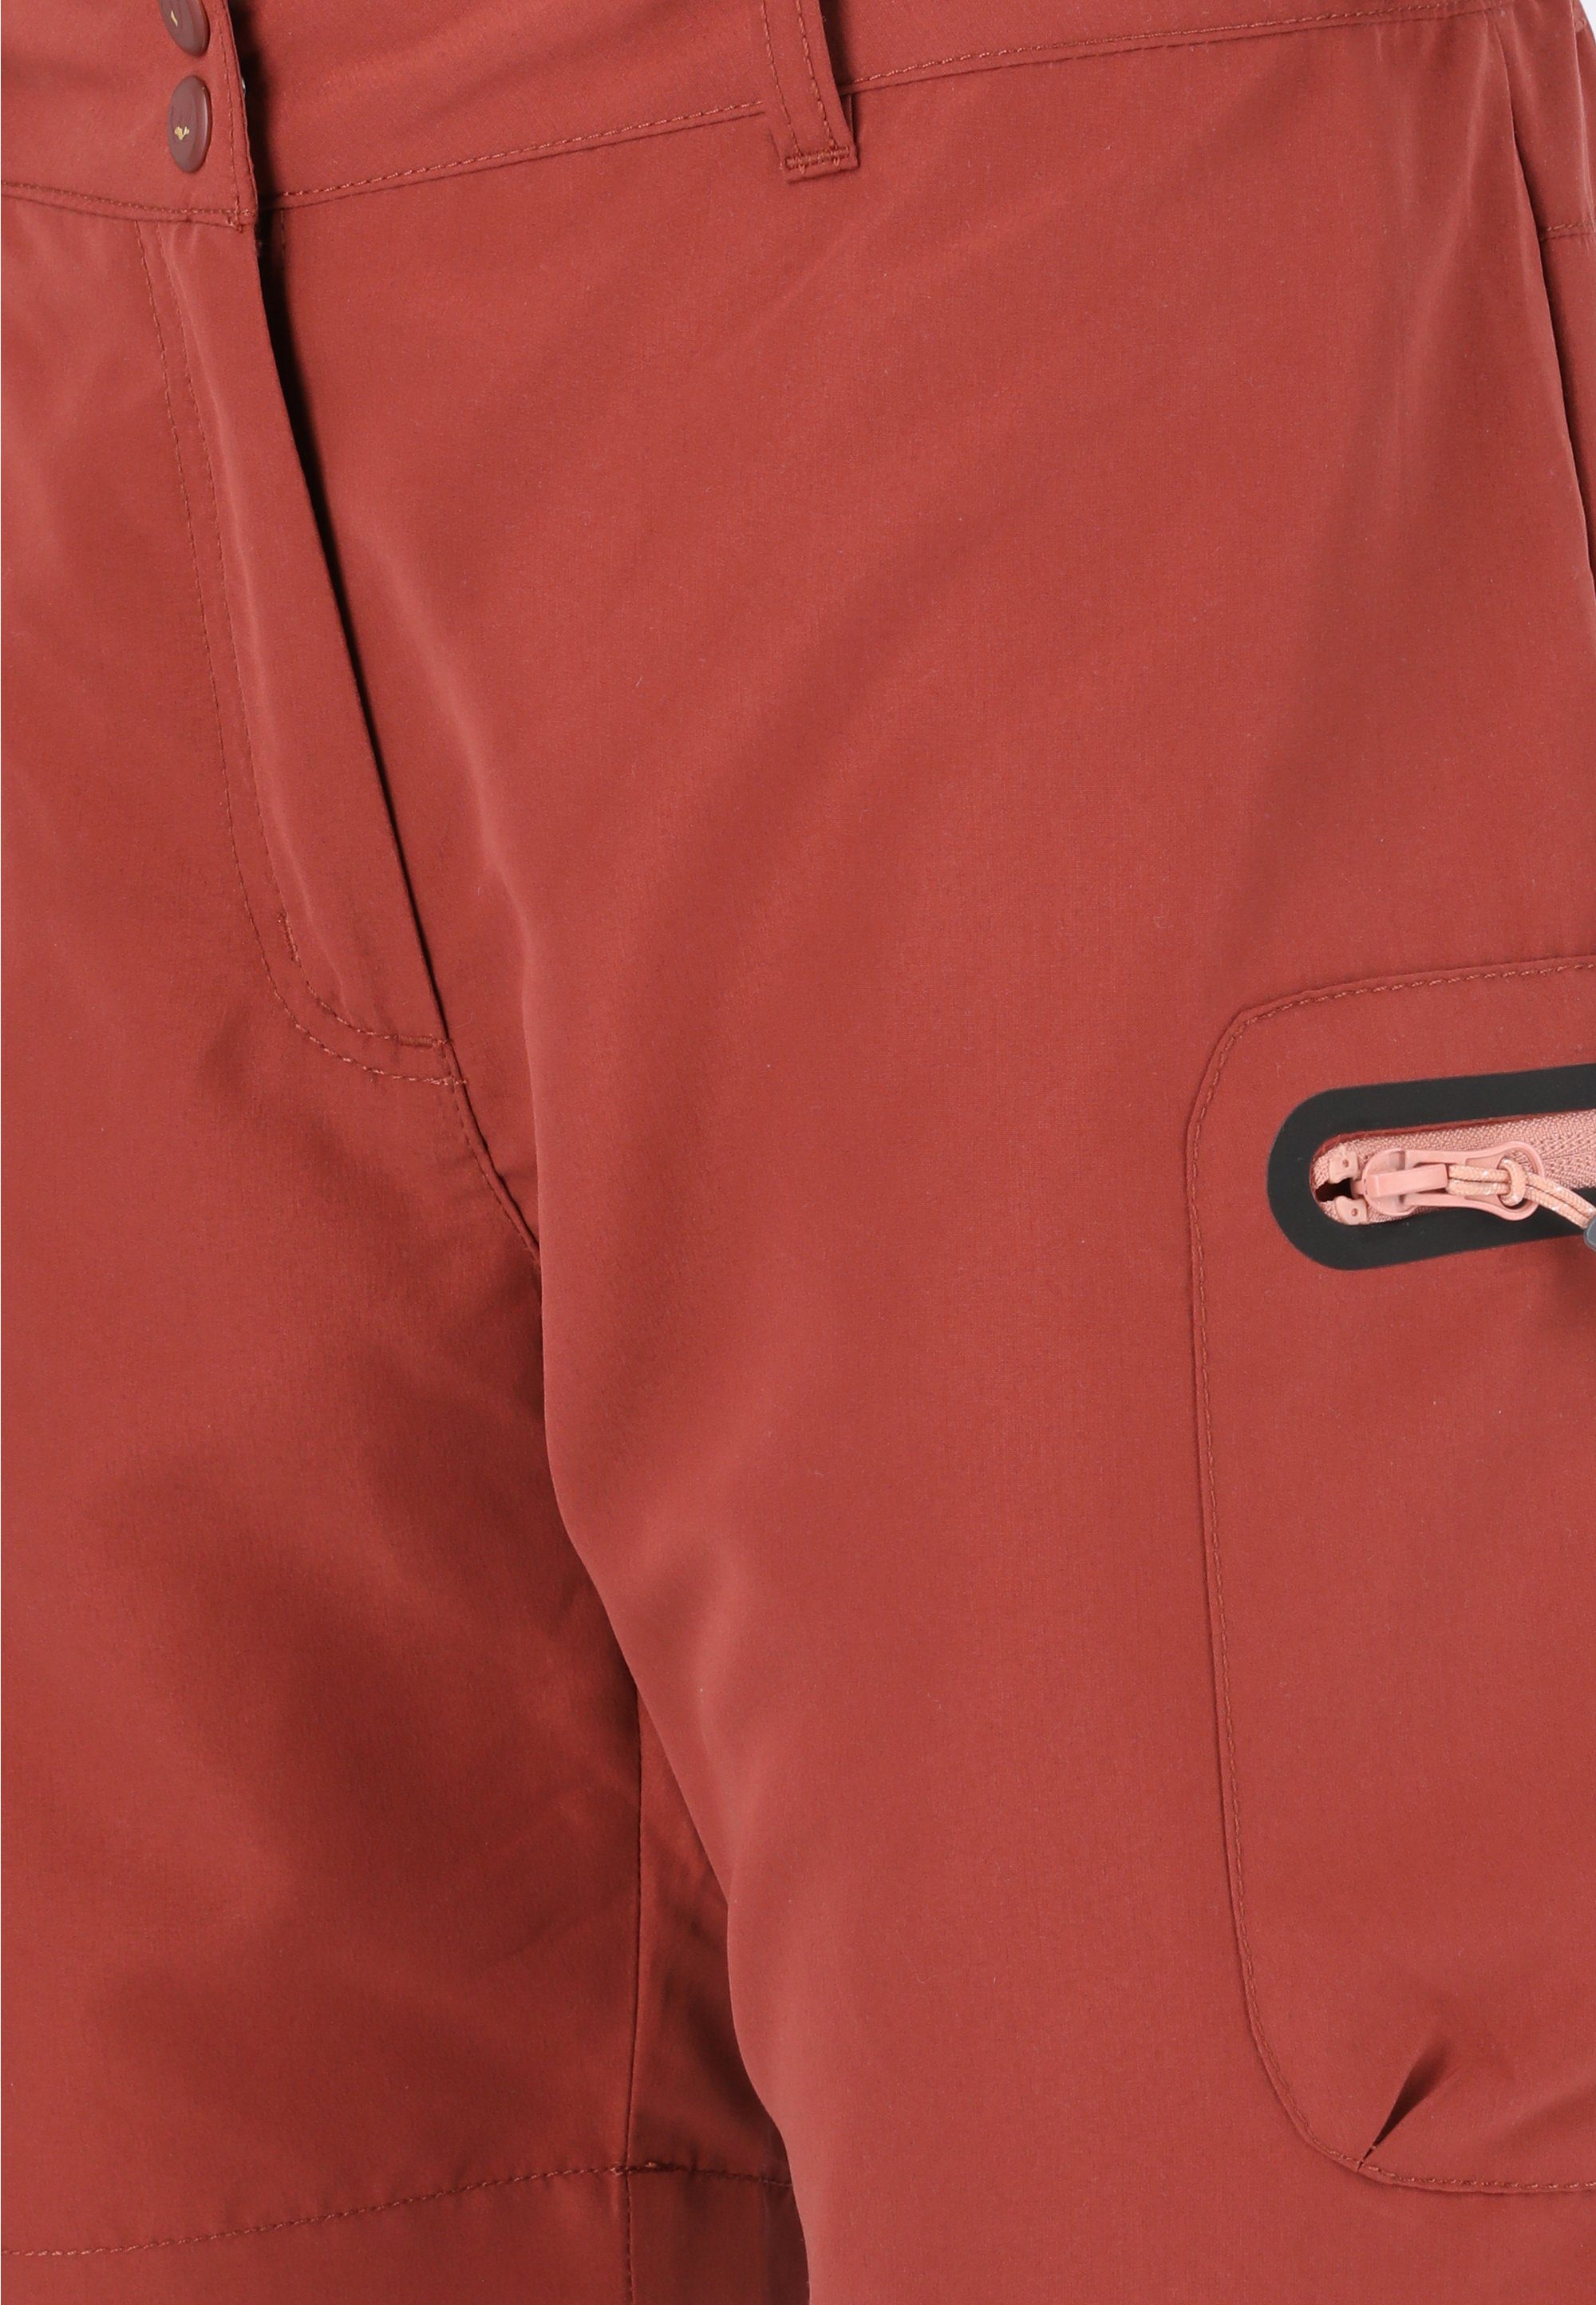 WHISTLER Shorts Stian mit praktischen Reißverschlusstaschen maroon